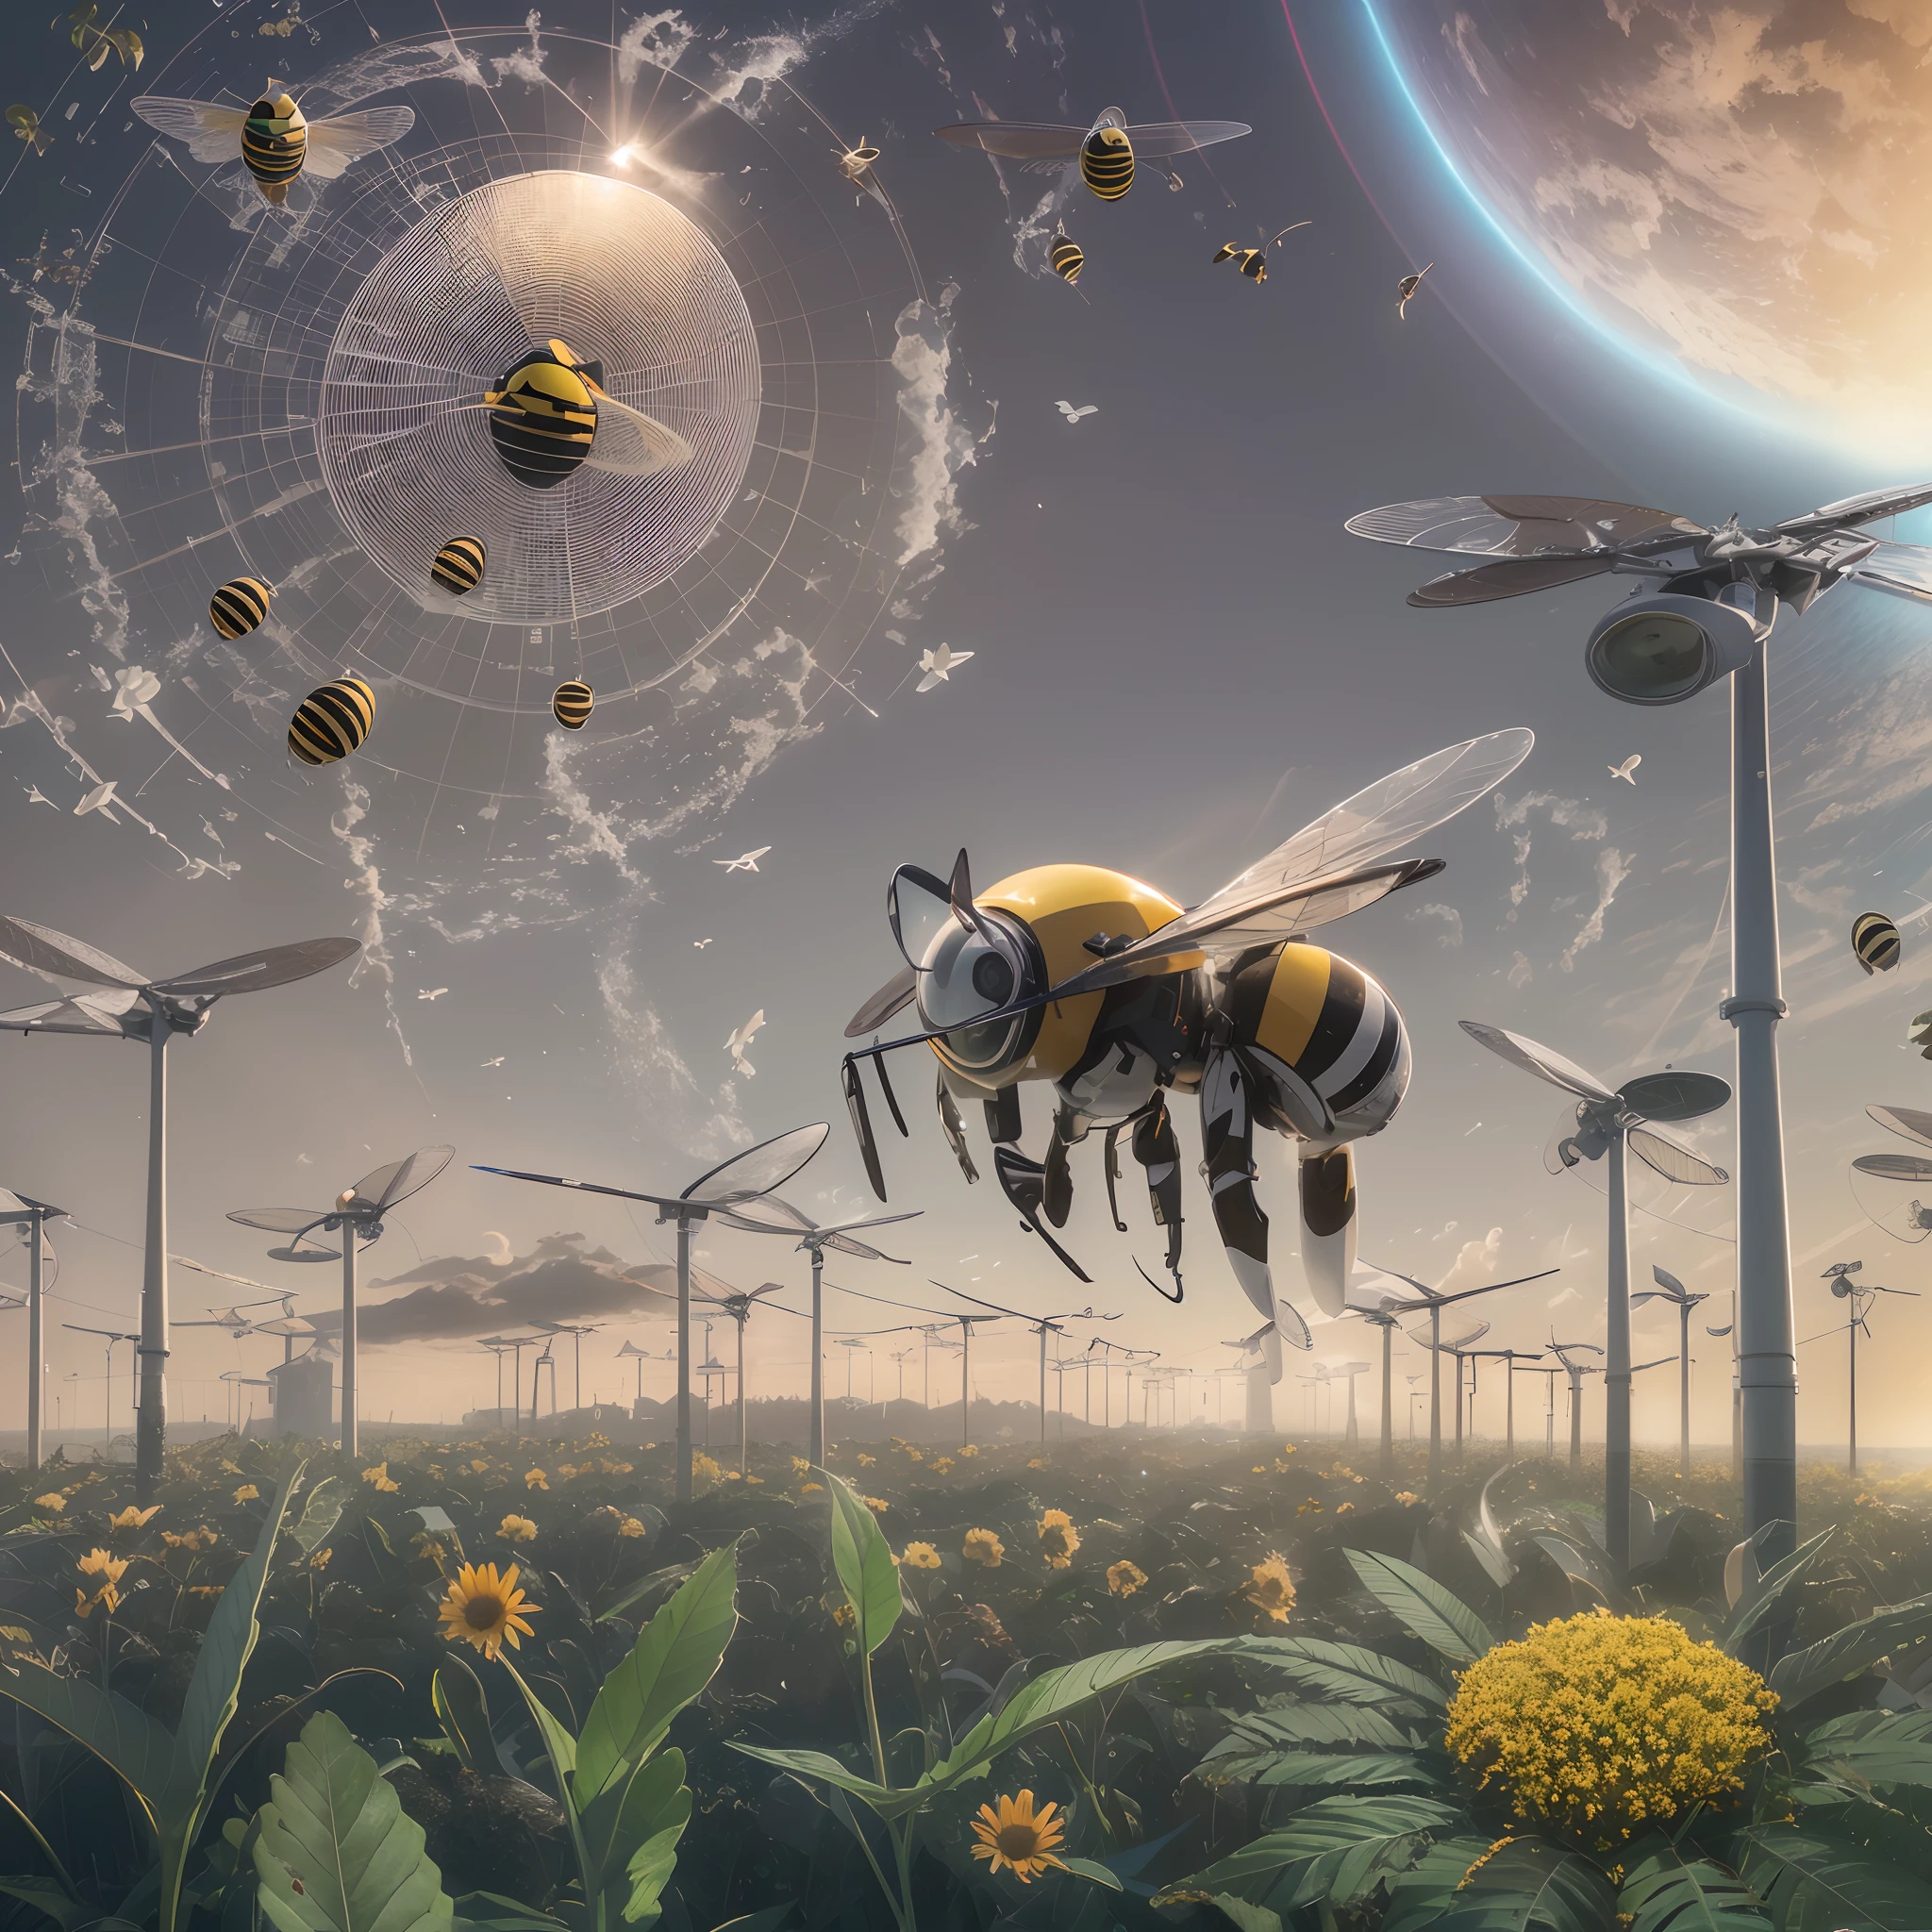 一张装有太阳能电池板的绿色星球图片，上面飞着一只蜜蜂, cleaning 未来, 8千 cleaning 未来, 16 k cleaning 未来, 封面艺术, 未来 concept art, near 未来 2 0 3 0, near 未来, 环境肖像, 太阳能!!!, 环境概念艺术, 未来, 太阳能 未来, 官方艺术, 太阳能, 封面照片, 美丽的, 锋利的, 電影, 轻松将其转换为视频,16千, 8千 , 并使用其中的任何人--auto